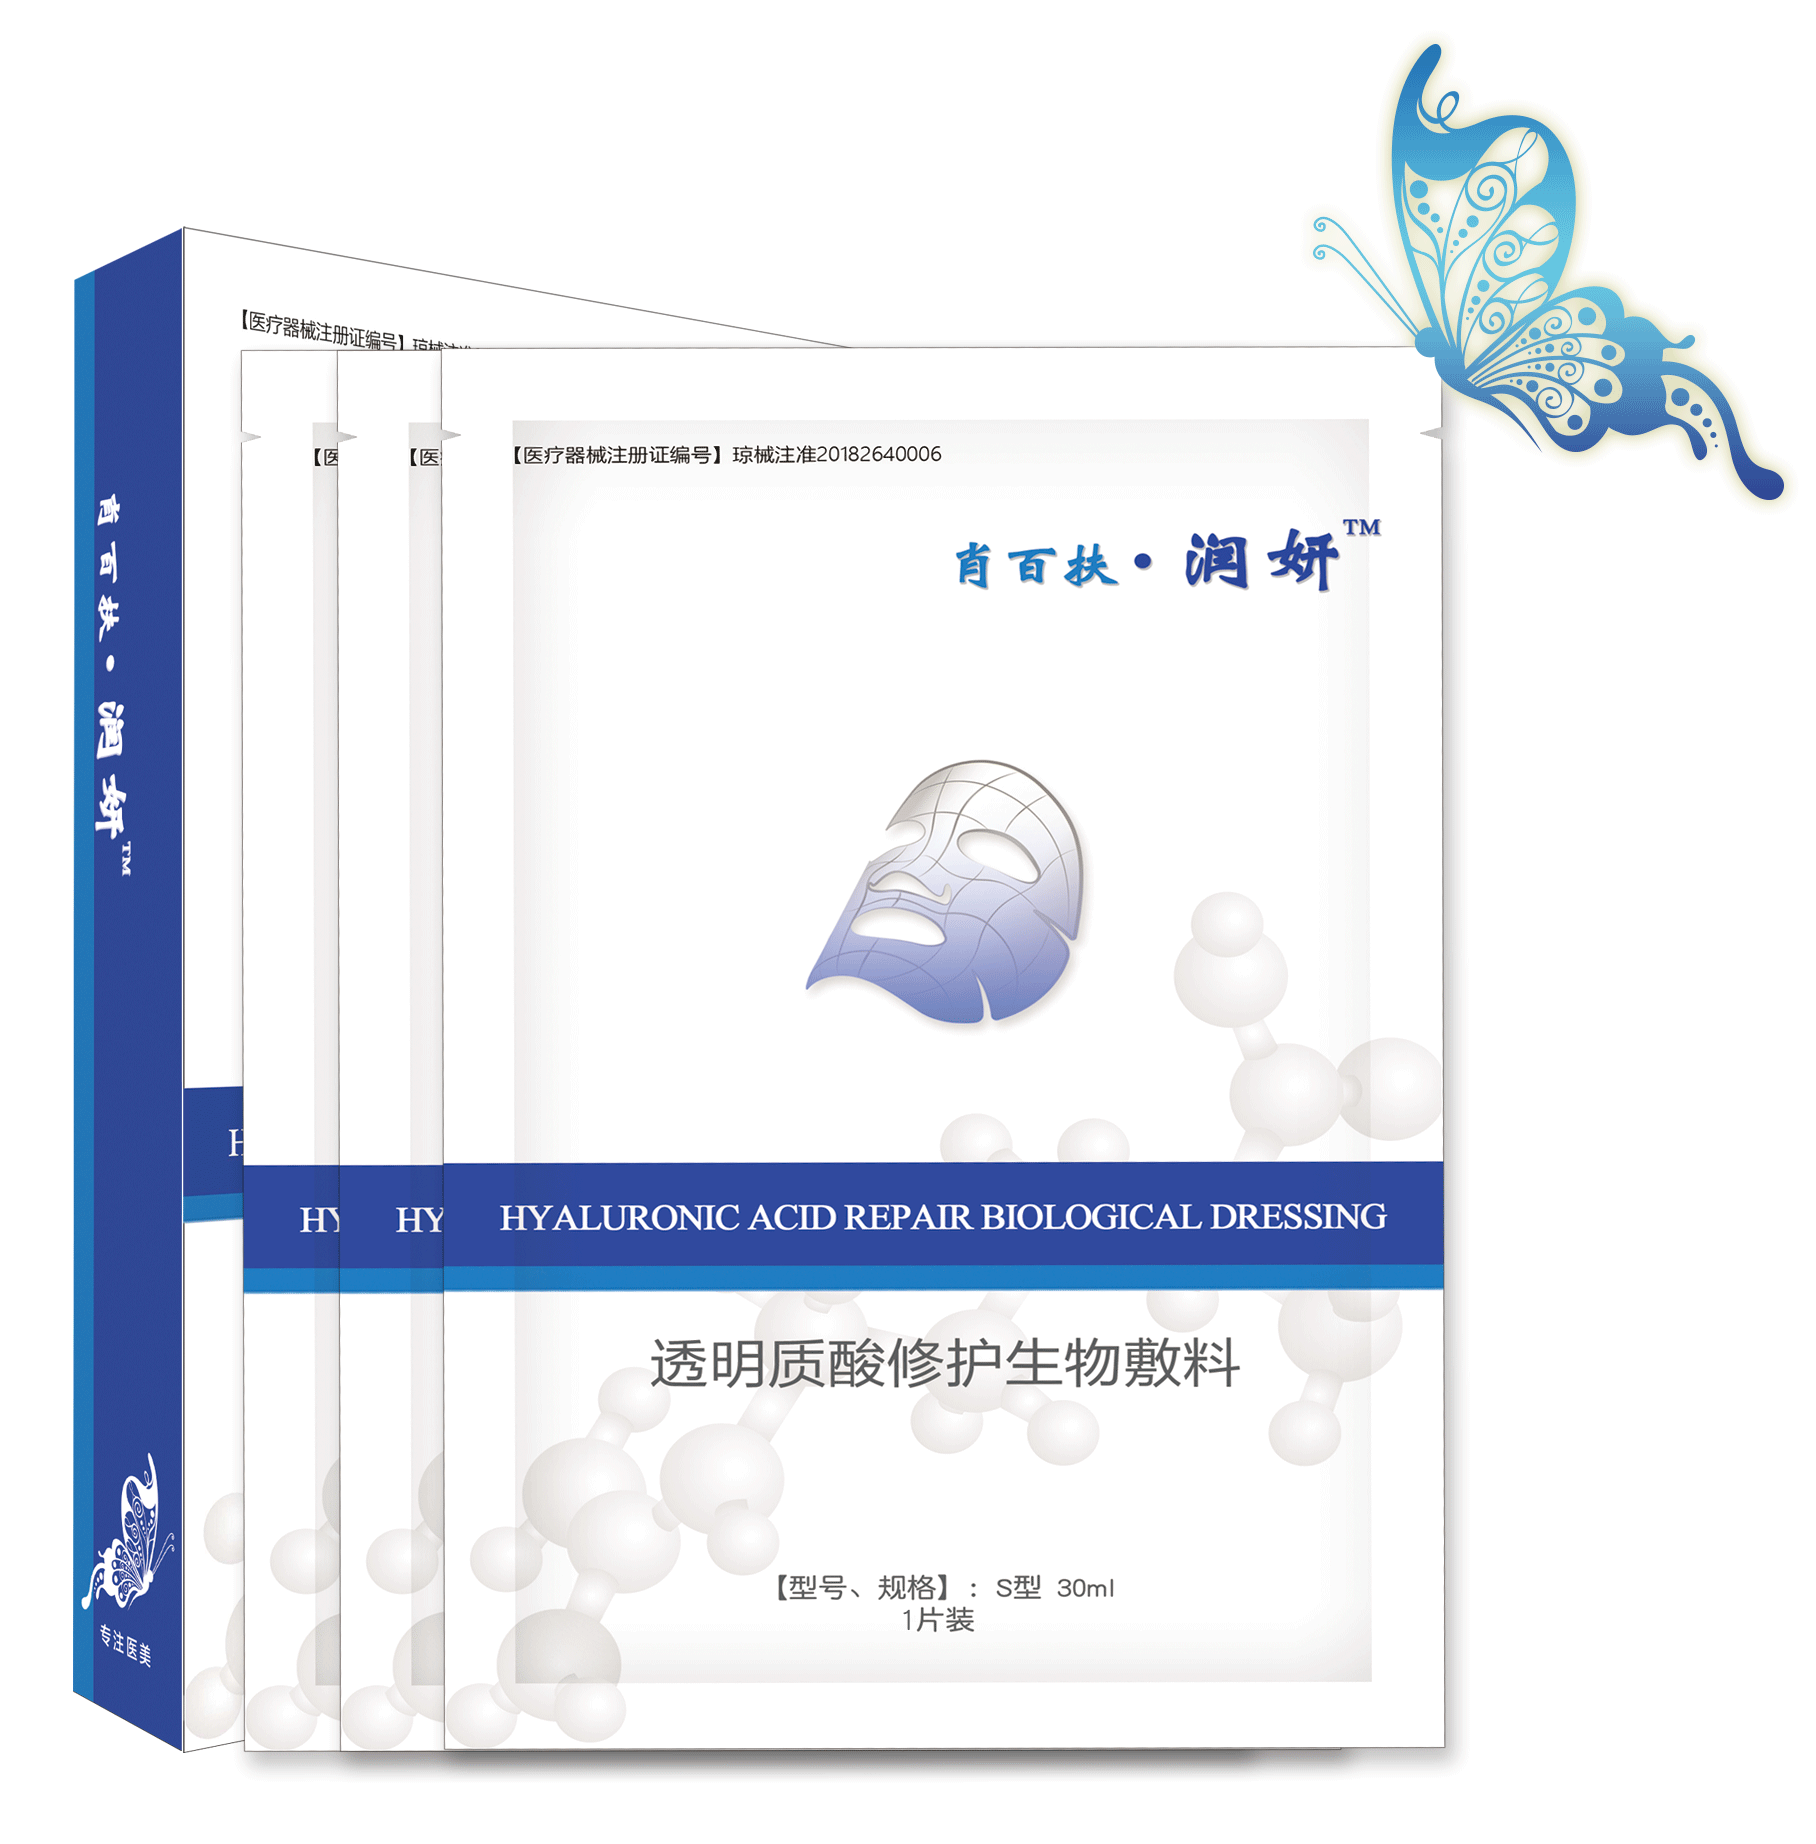 肖百扶·润妍透明质酸修护生物敷料